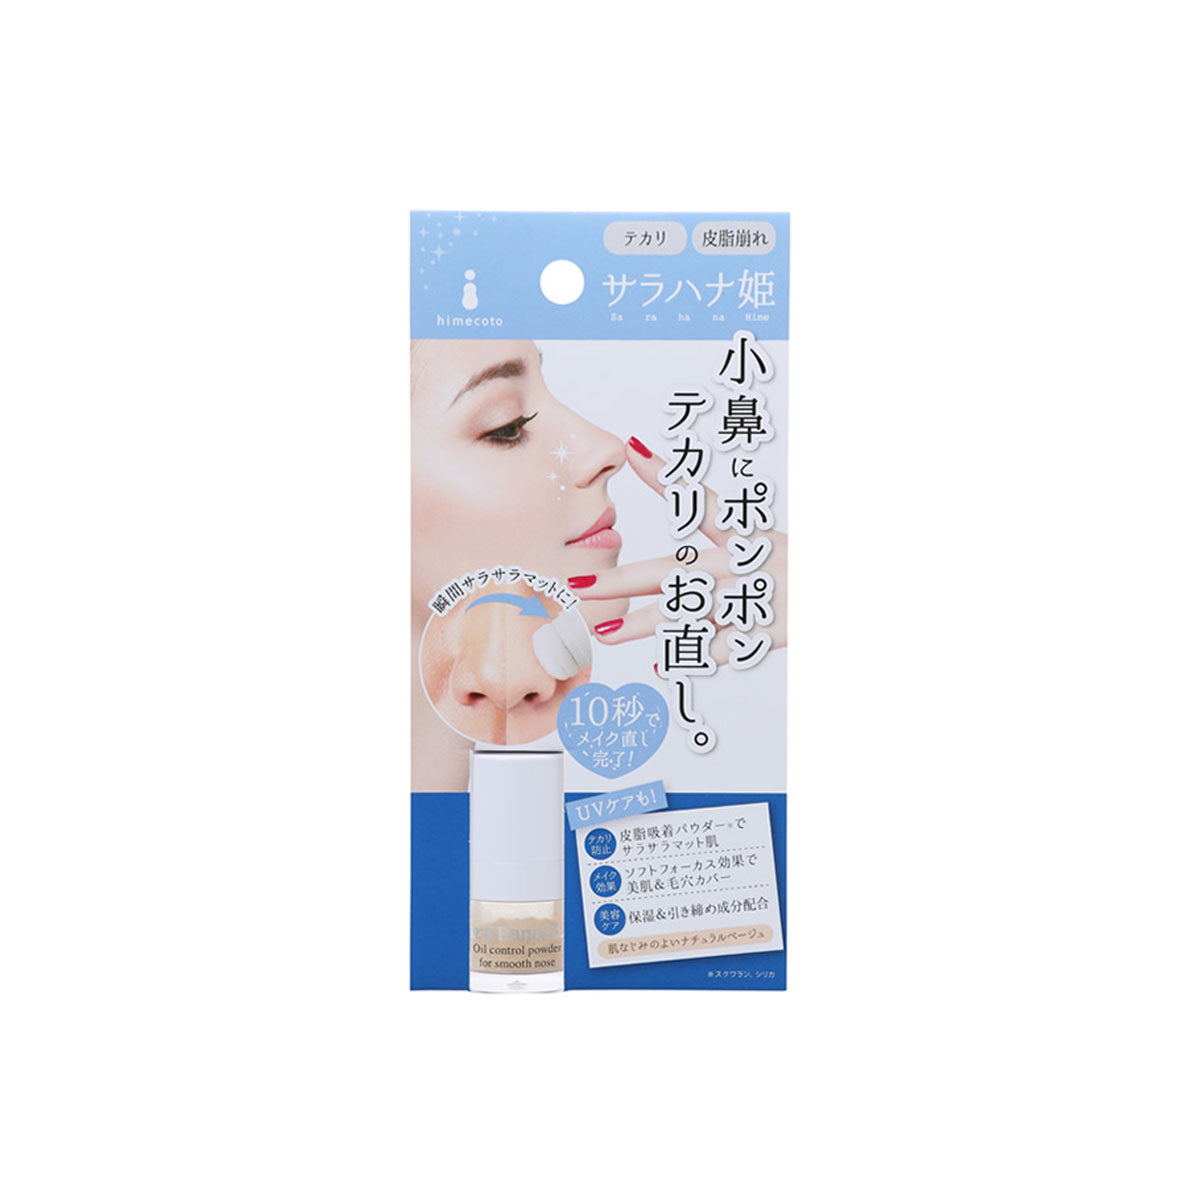 日本LIBERTA高效鼻子控油蜜粉 1.8g